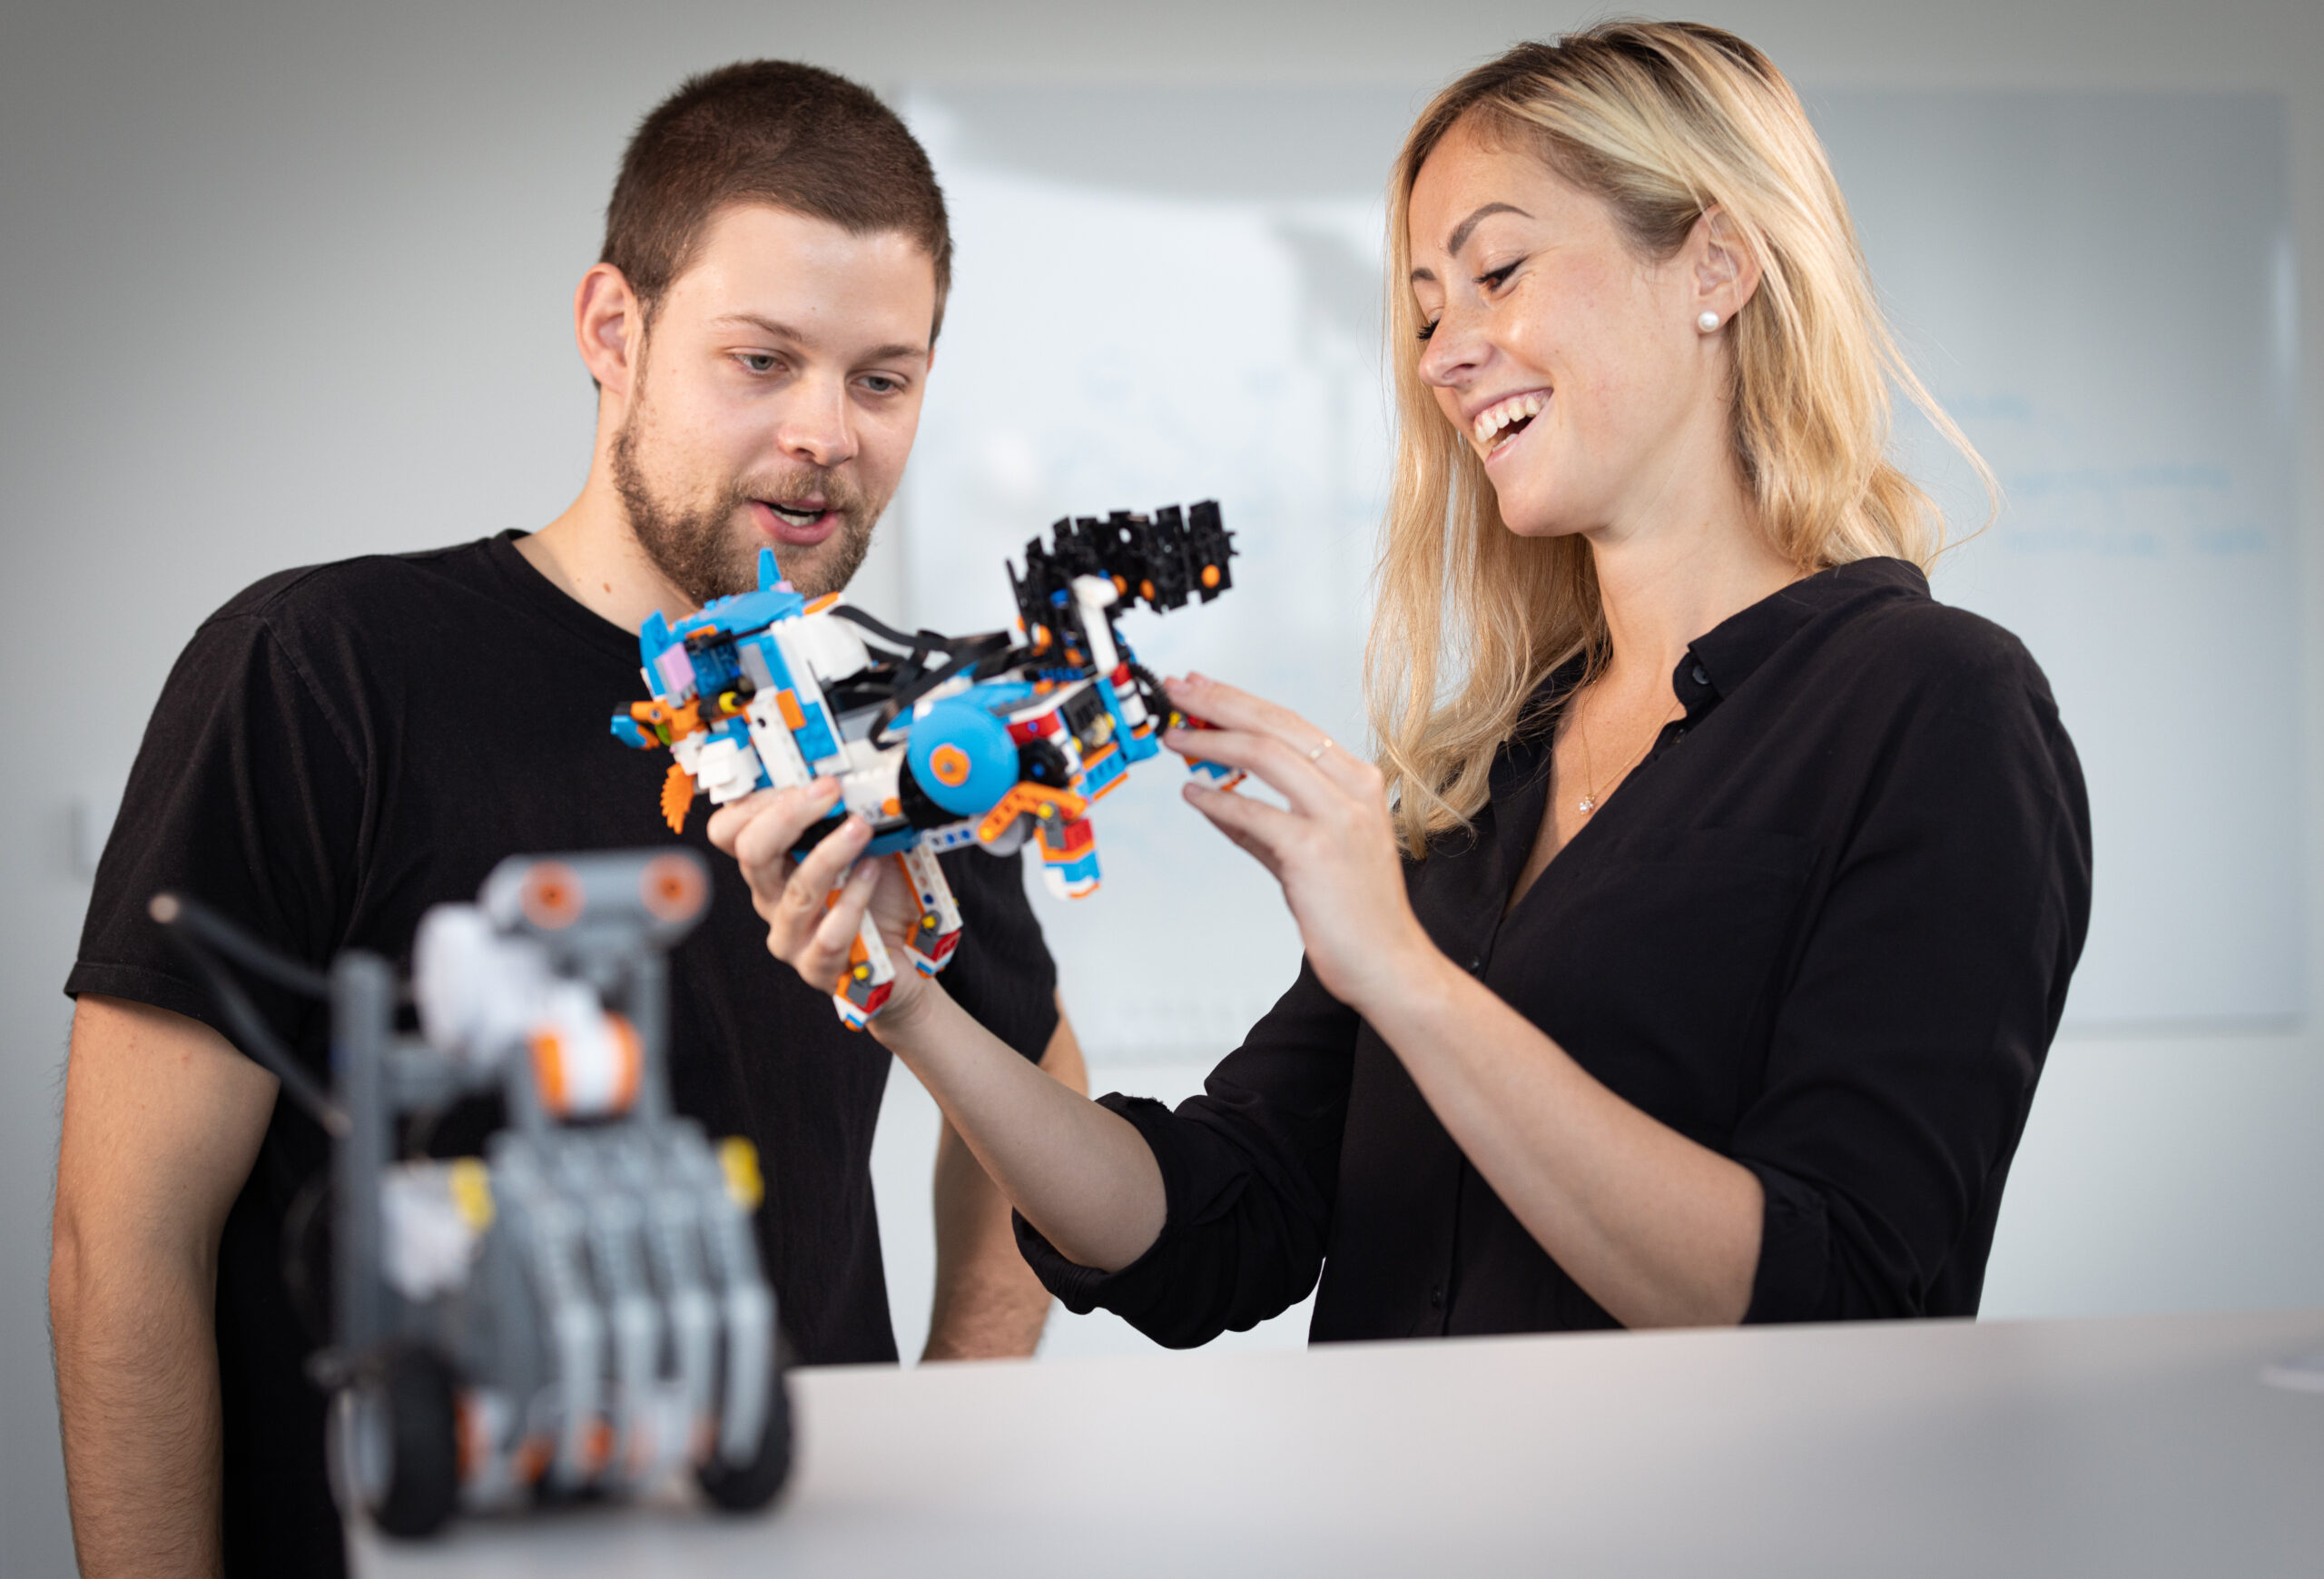 Zwei Personen betrachten und interagieren mit einem Robotik-Modell.